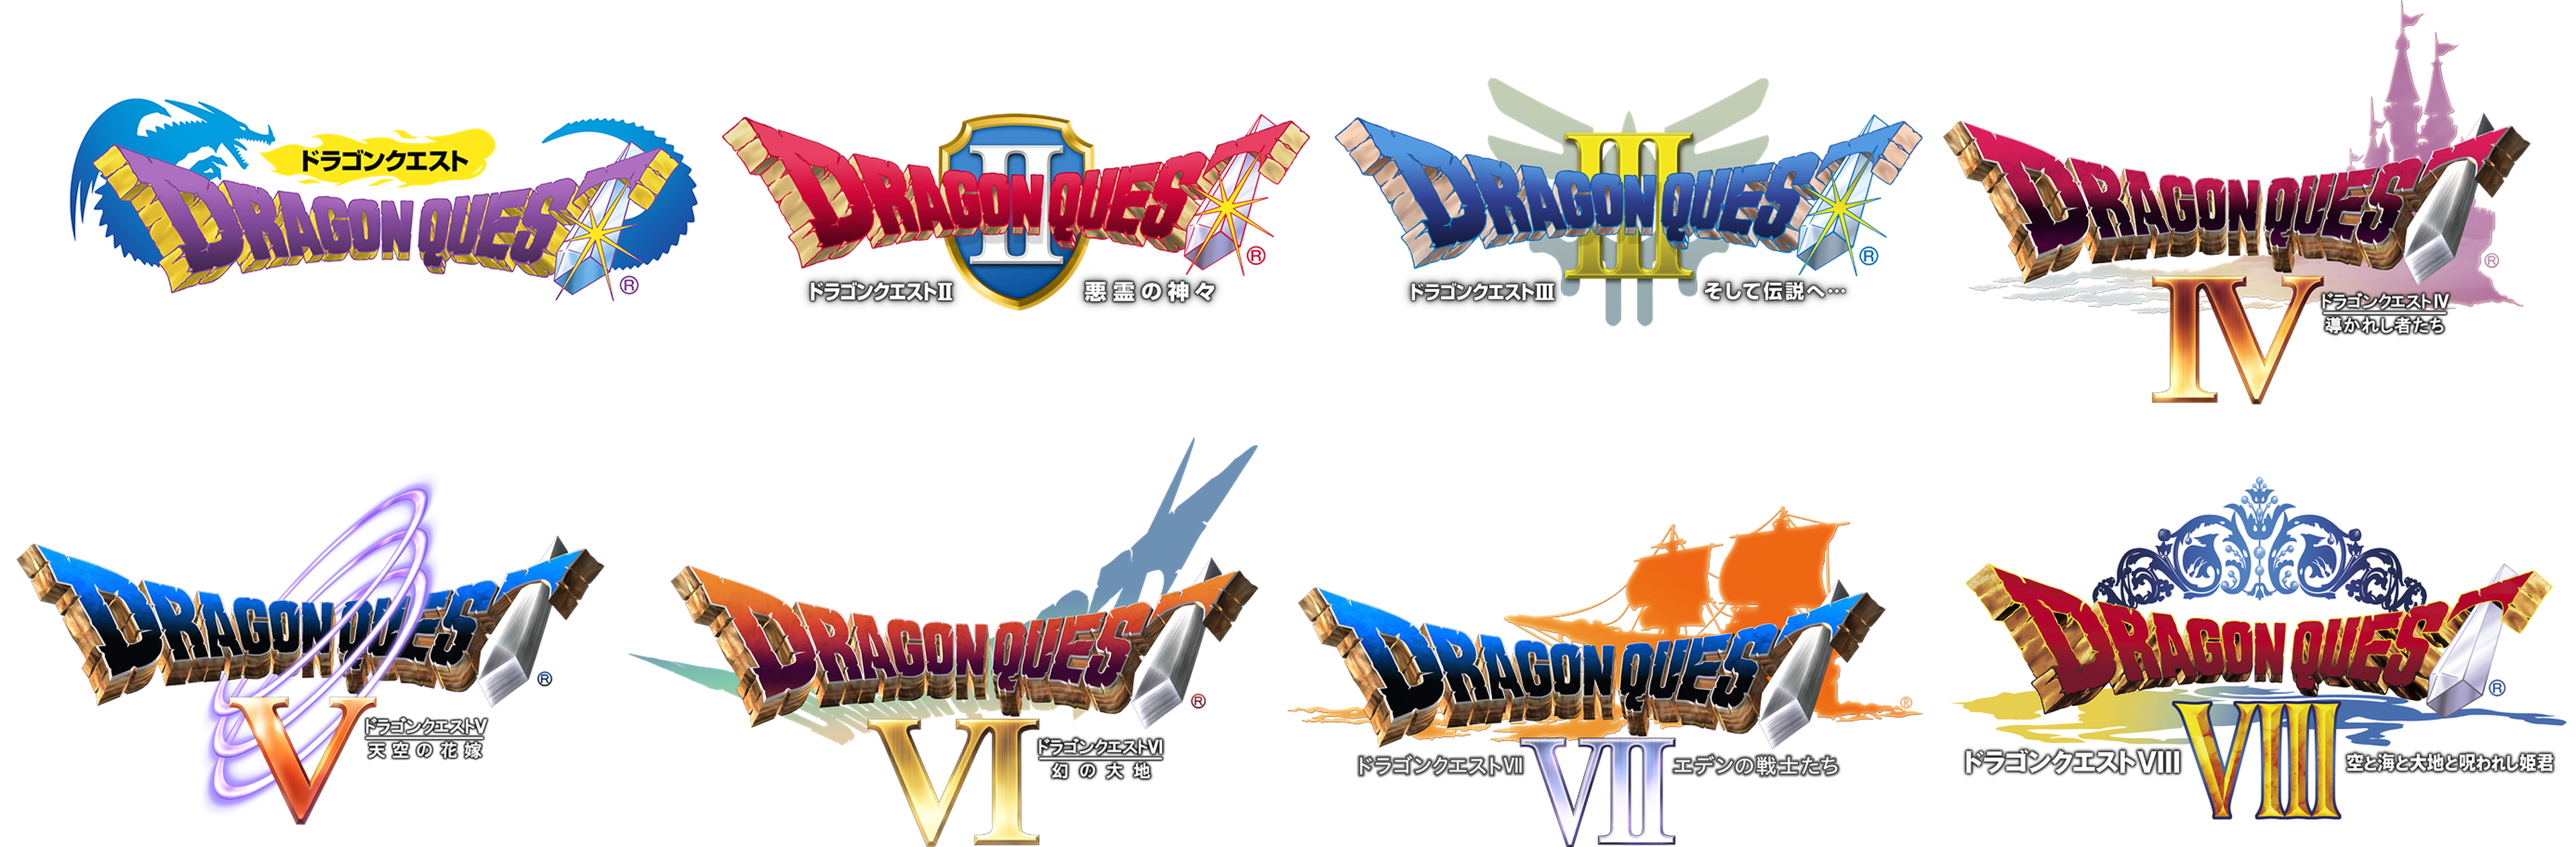 Square Enix está trabajando en un nuevo Dragon Quest